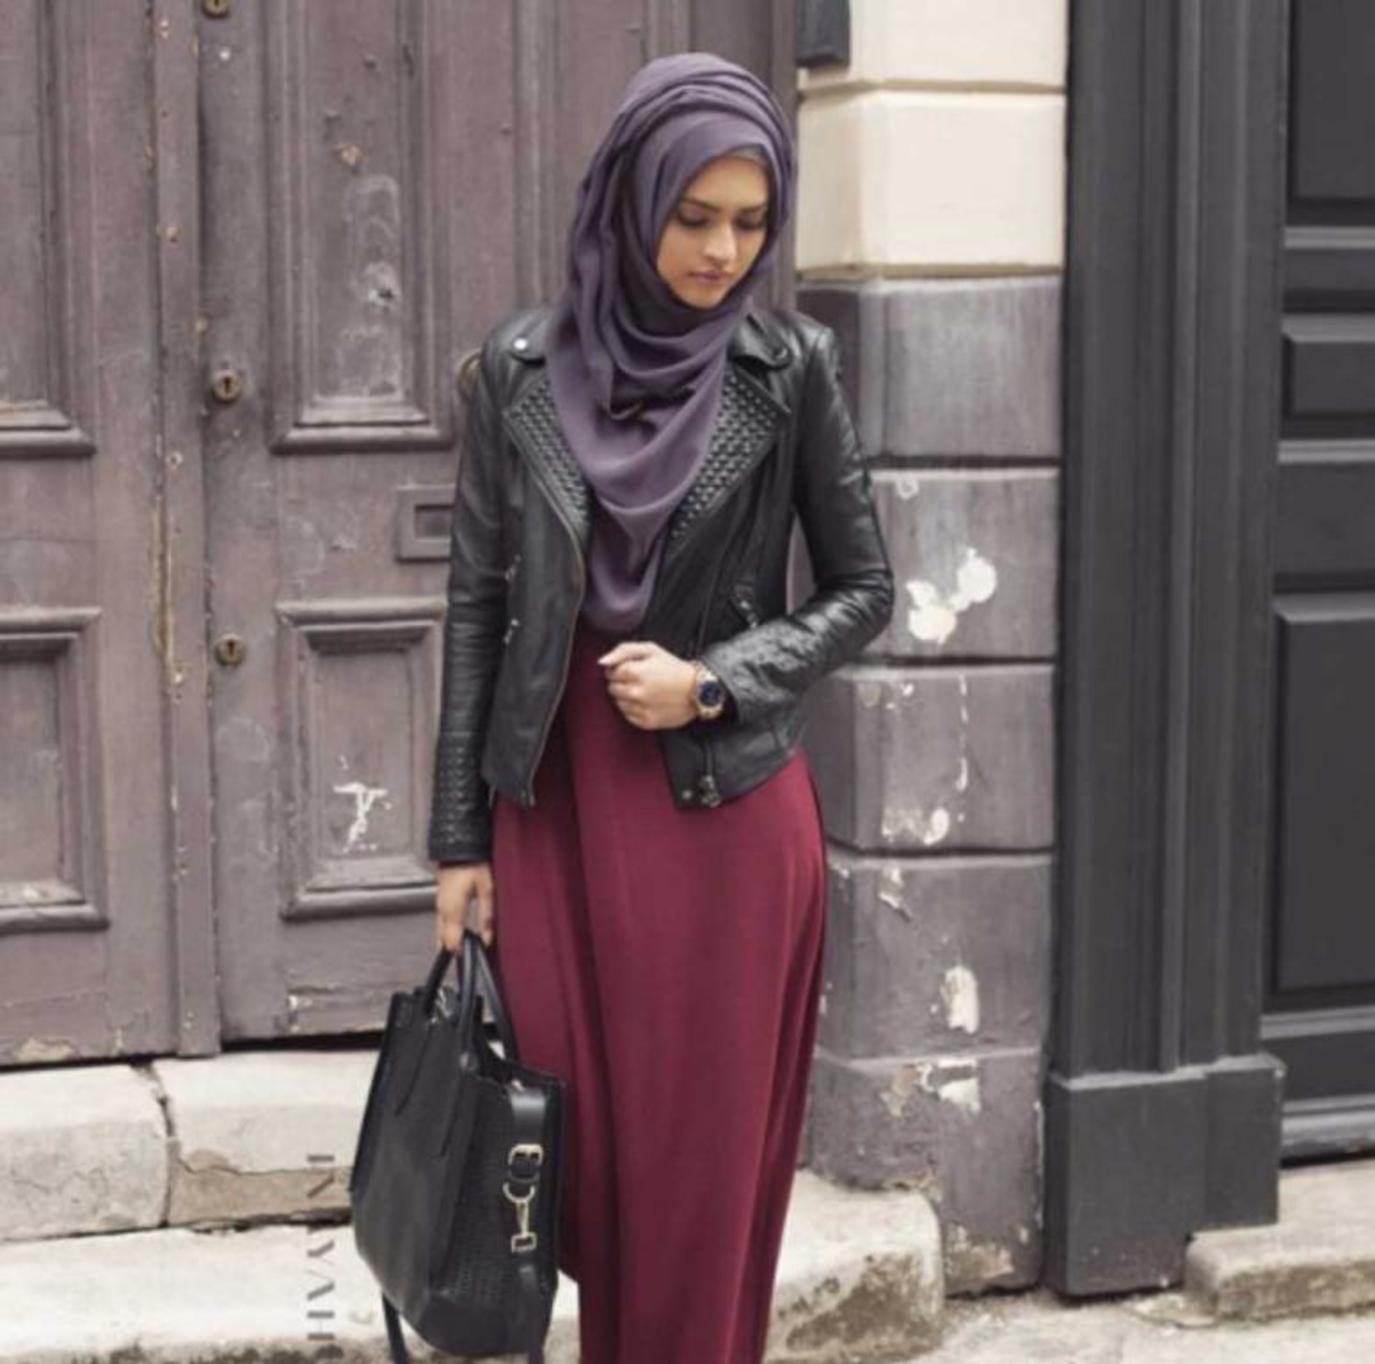 хиджаб фото мусульманок в полный рост